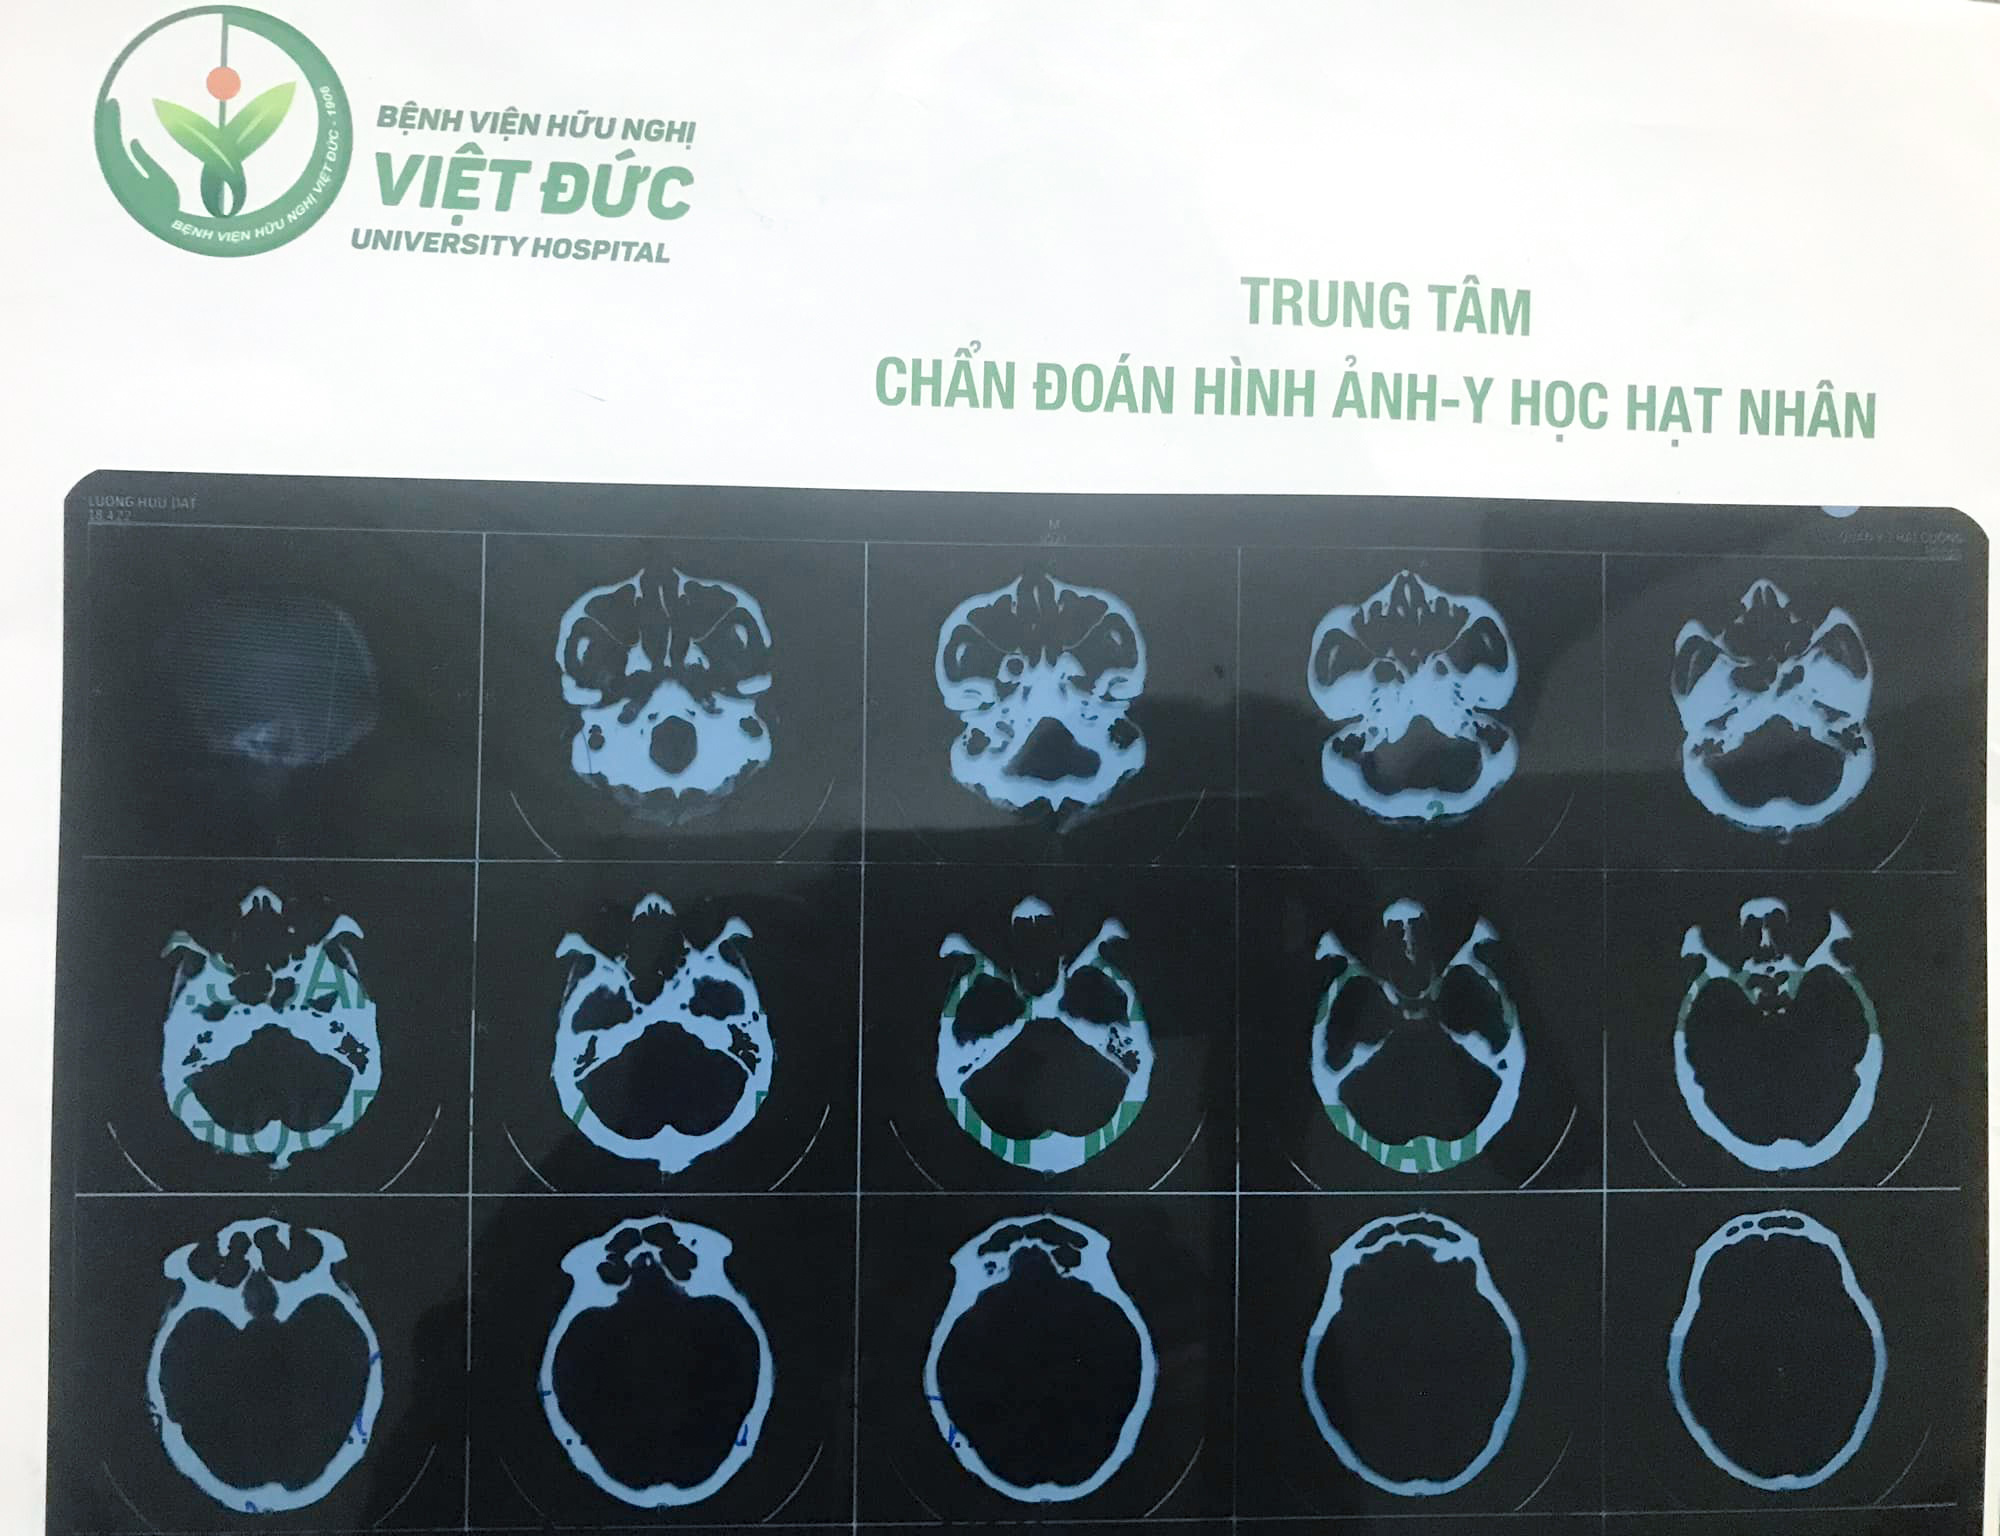 Kết quả chụp X quang của anh Lương Hữu Đạt tại bệnh viện Hữu nghị Việt - Đức cho thấy máu đã ngừng chảy, chỉ còn máu tụ, các miệng chảy đã thu nhỏ lại (ảnh do Phật tử cung cấp)